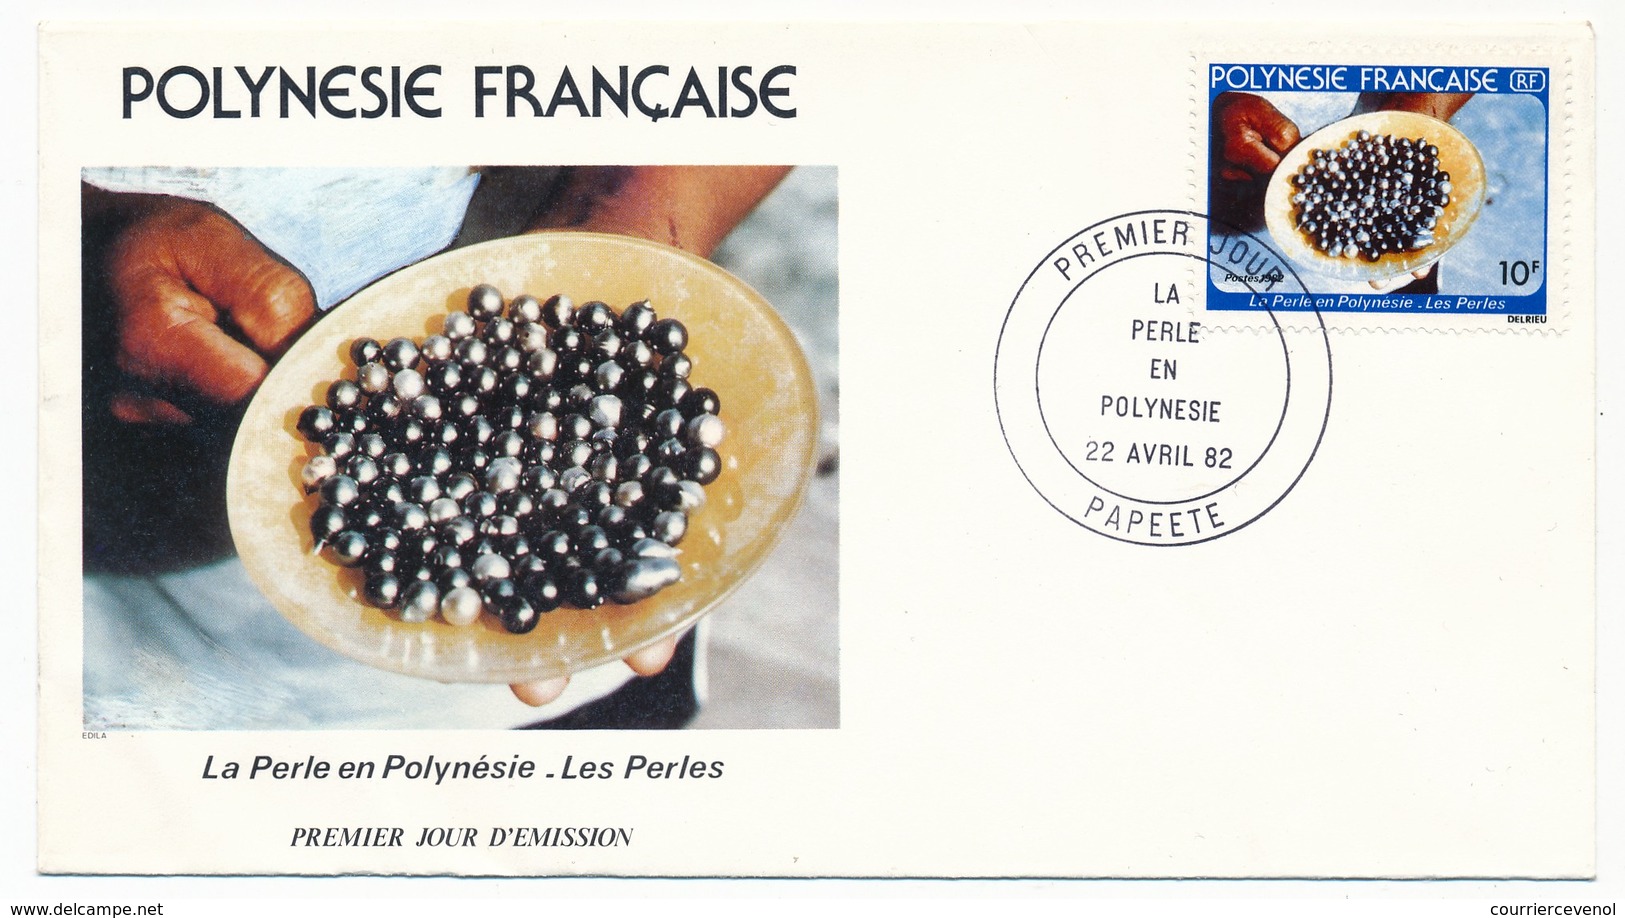 POLYNESIE FRANCAISE - 3 FDC - La Perle En Polynésie - Papeete - 22 Avril 1982 - FDC